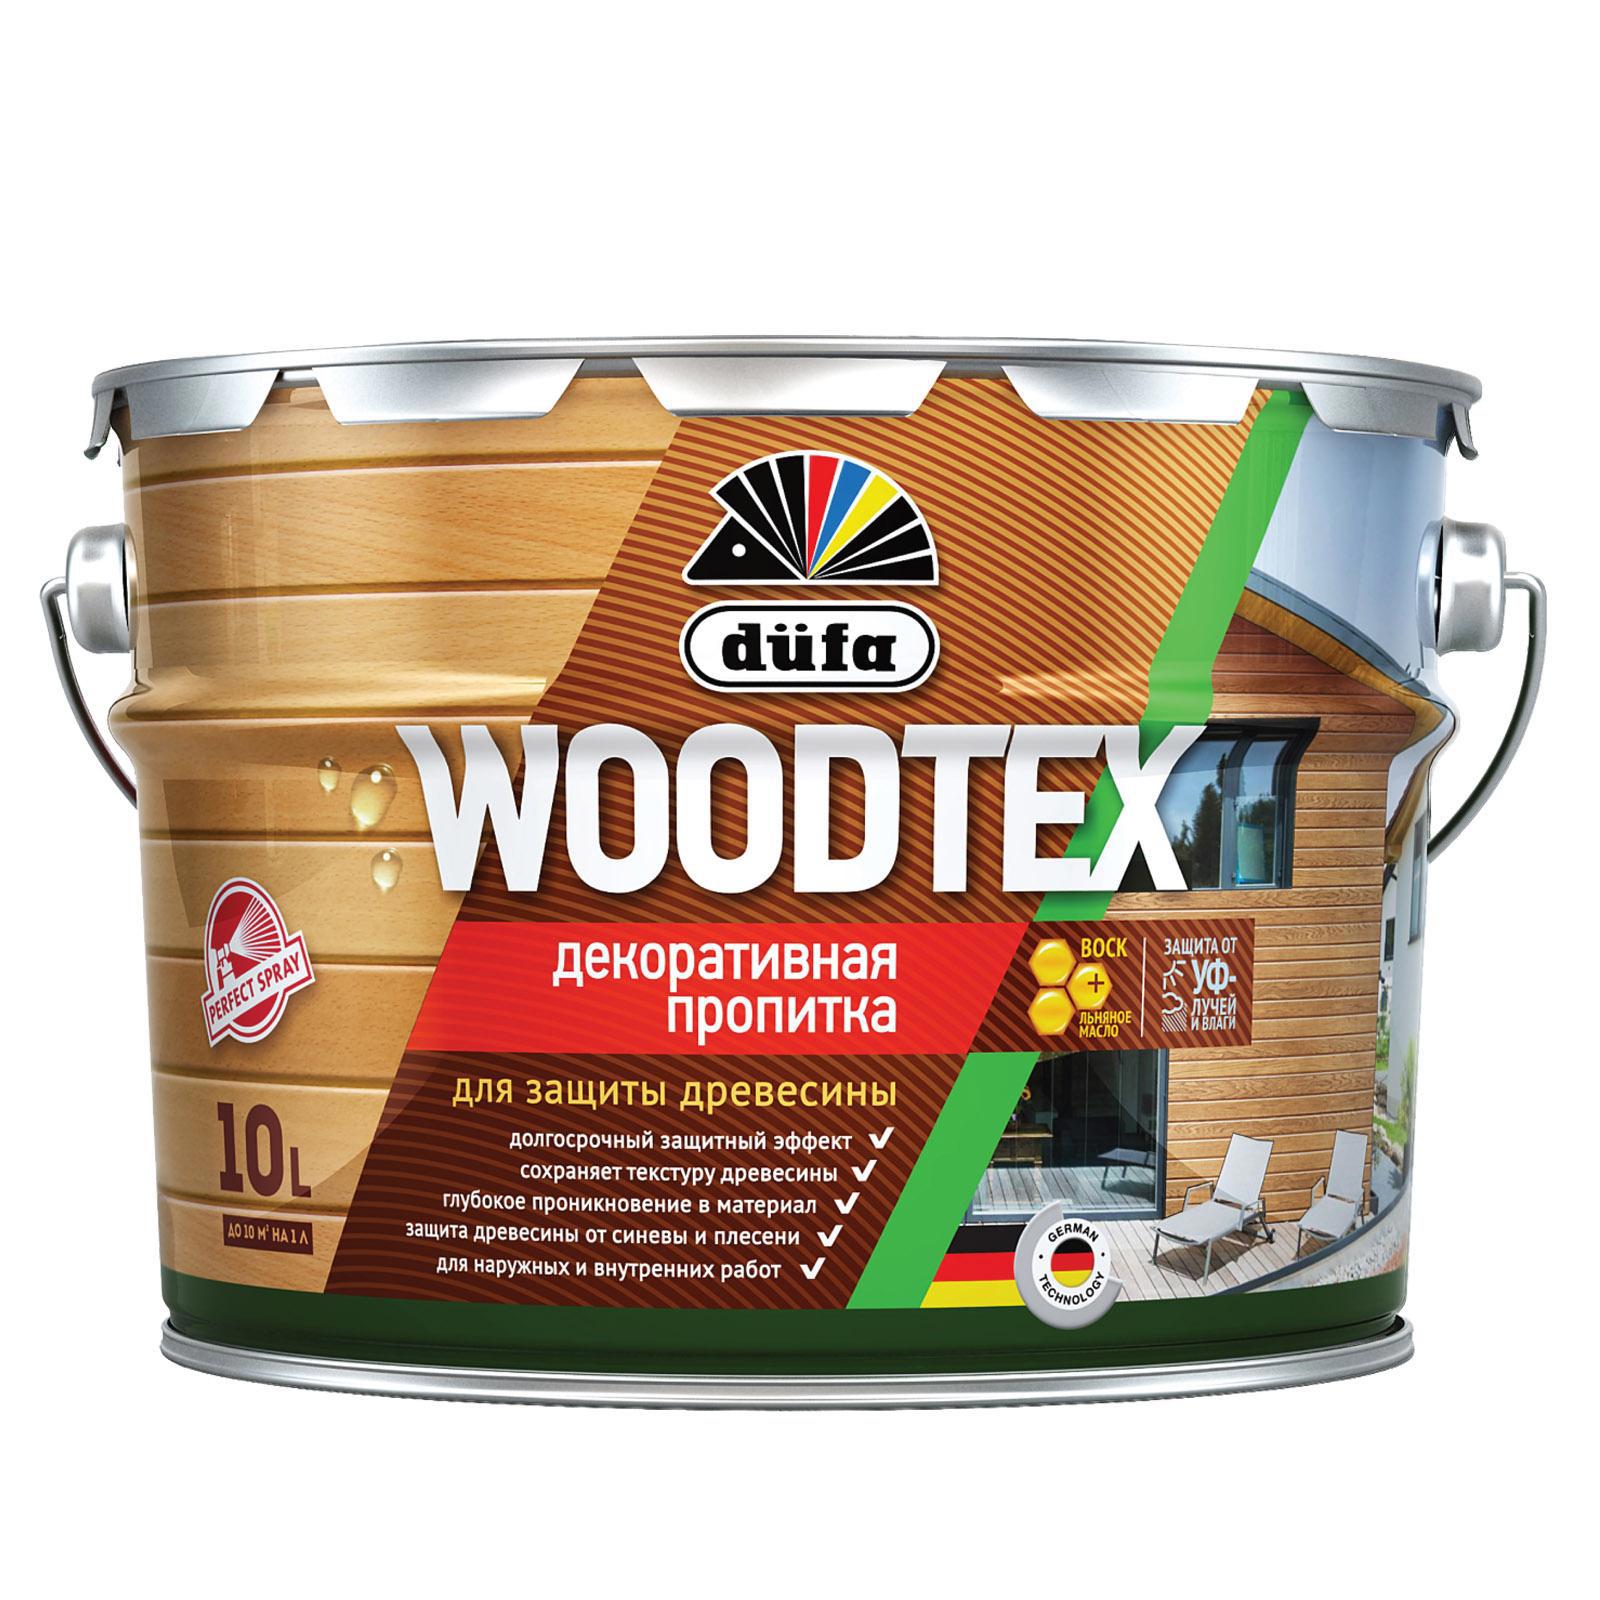 90194543 Пропитка декоративная для защиты древесины алкидная Woodtex белая 10 л STLM-0128475 DUFA